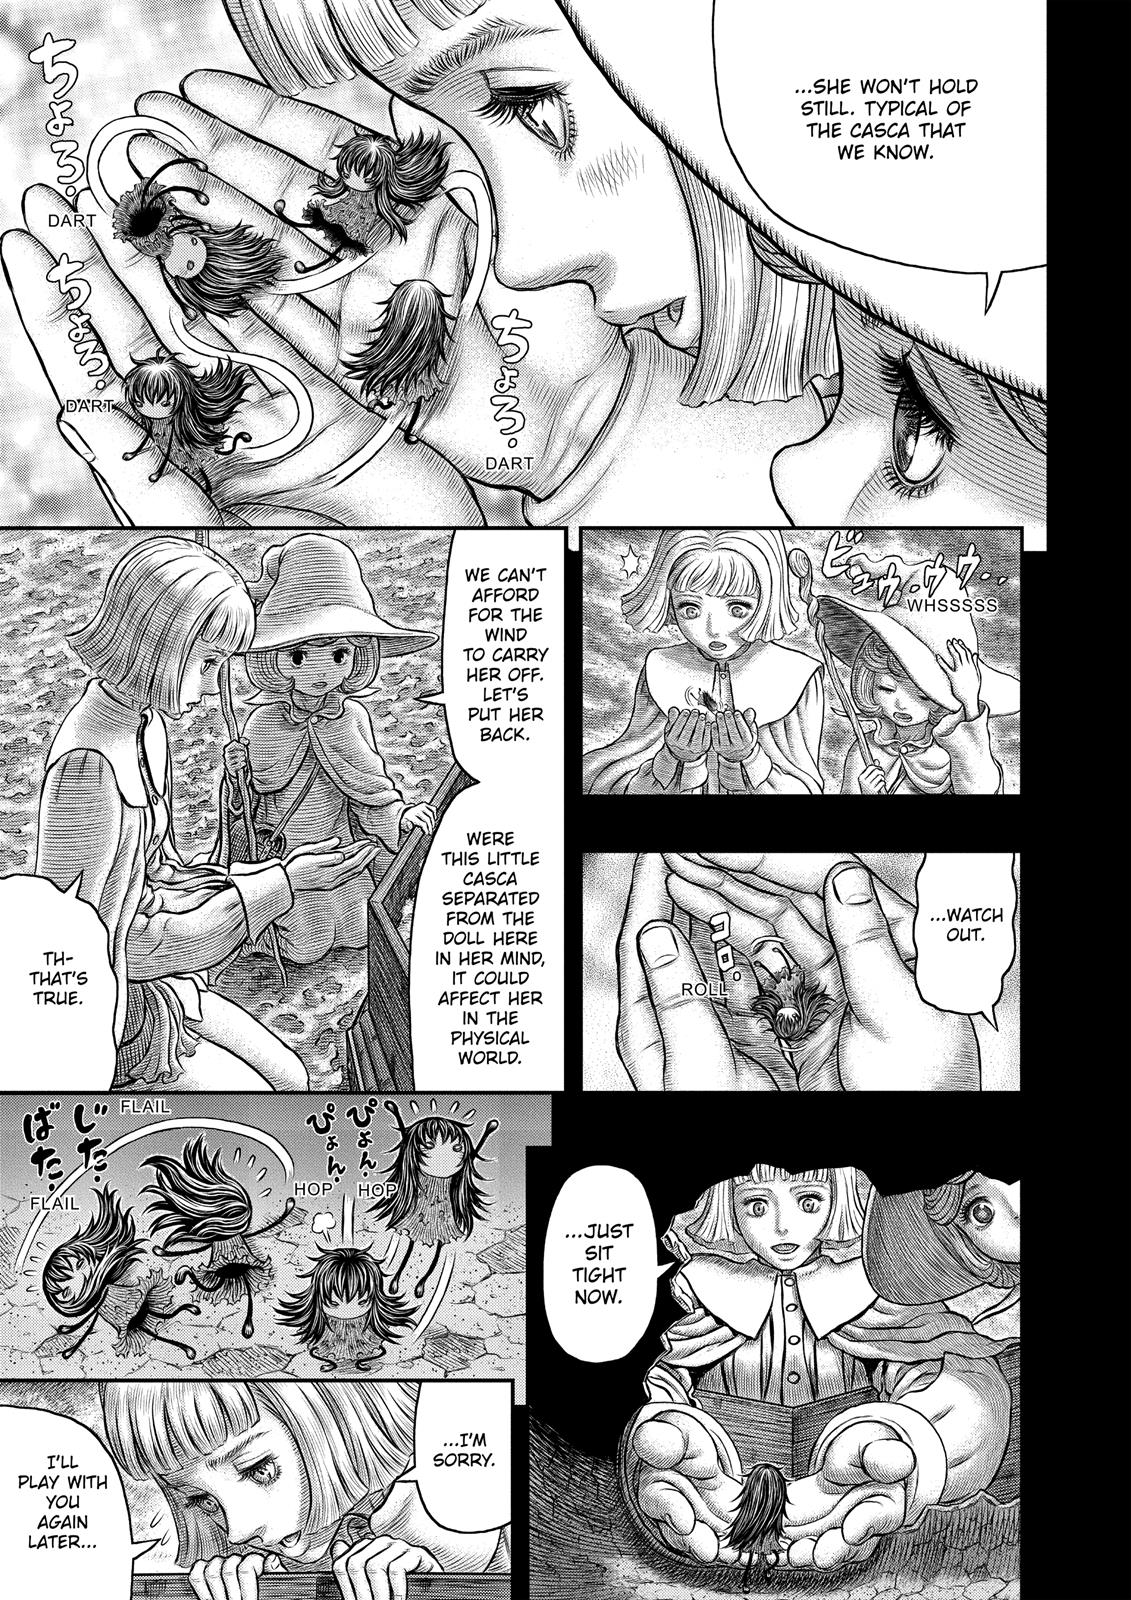 Berserk Manga Chapter 348 image 18